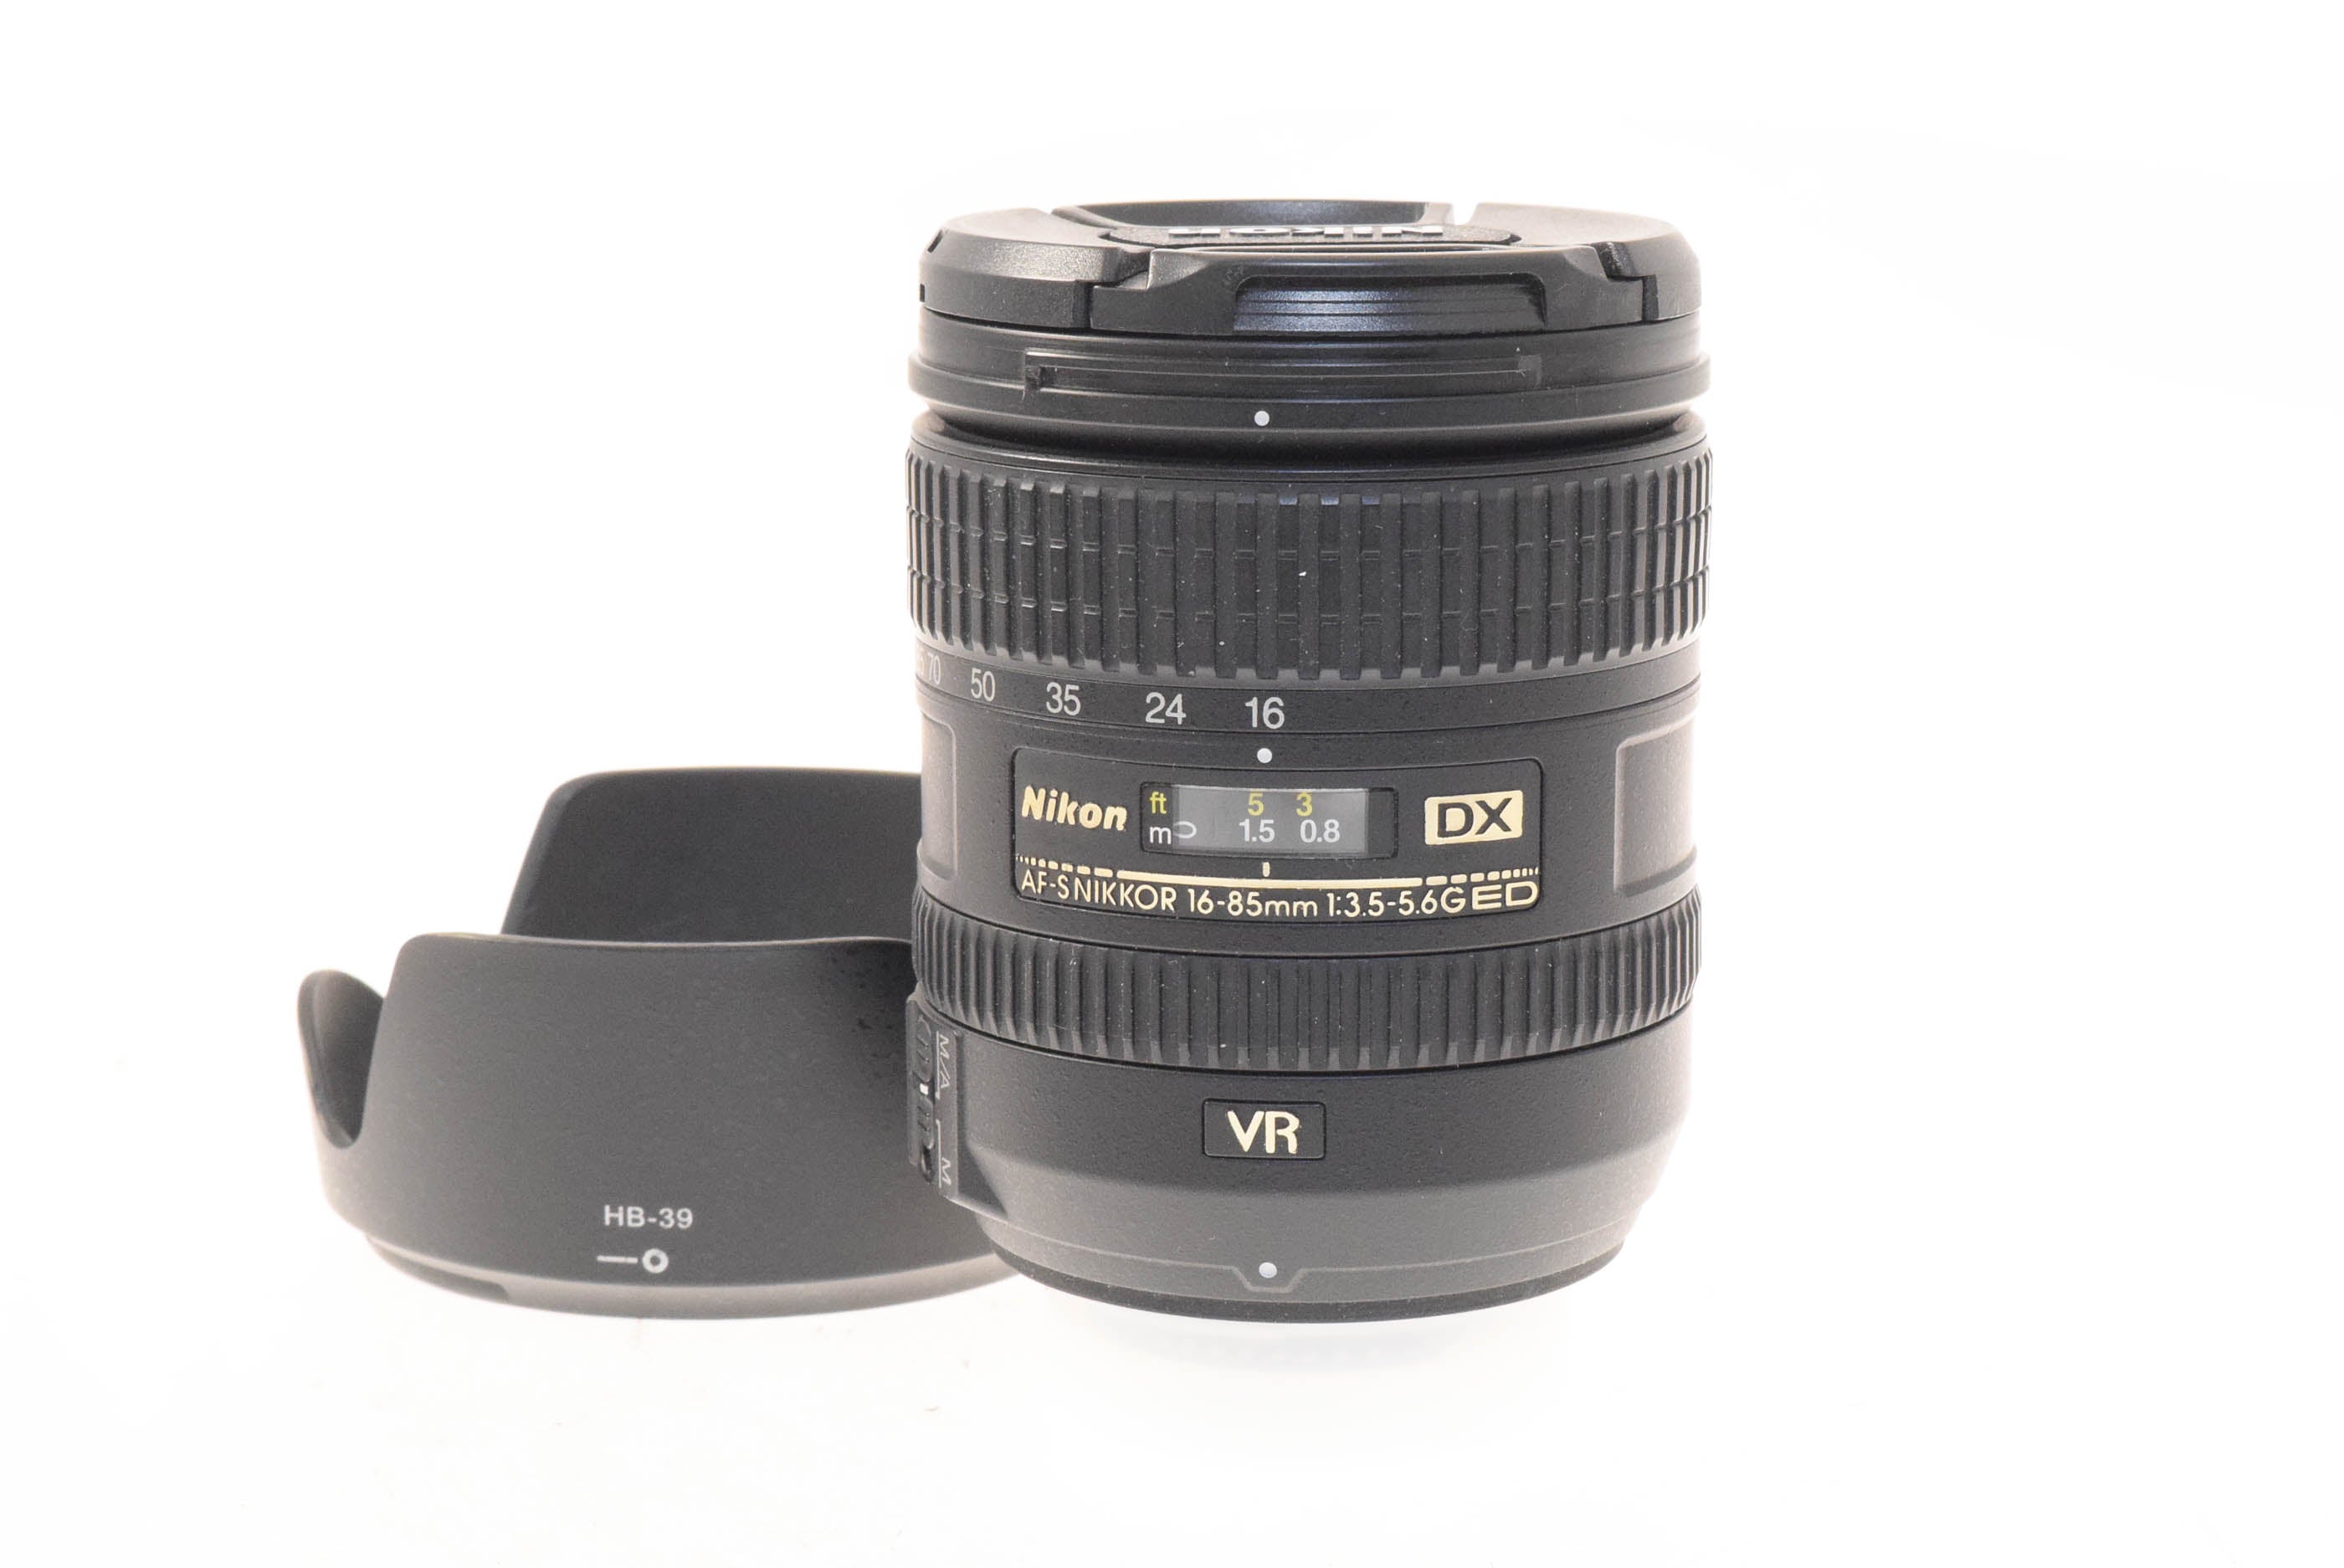 Nikon 16-85mm f3.5-5.6 G ED VR AF-S Nikkor - Lens – Kamerastore